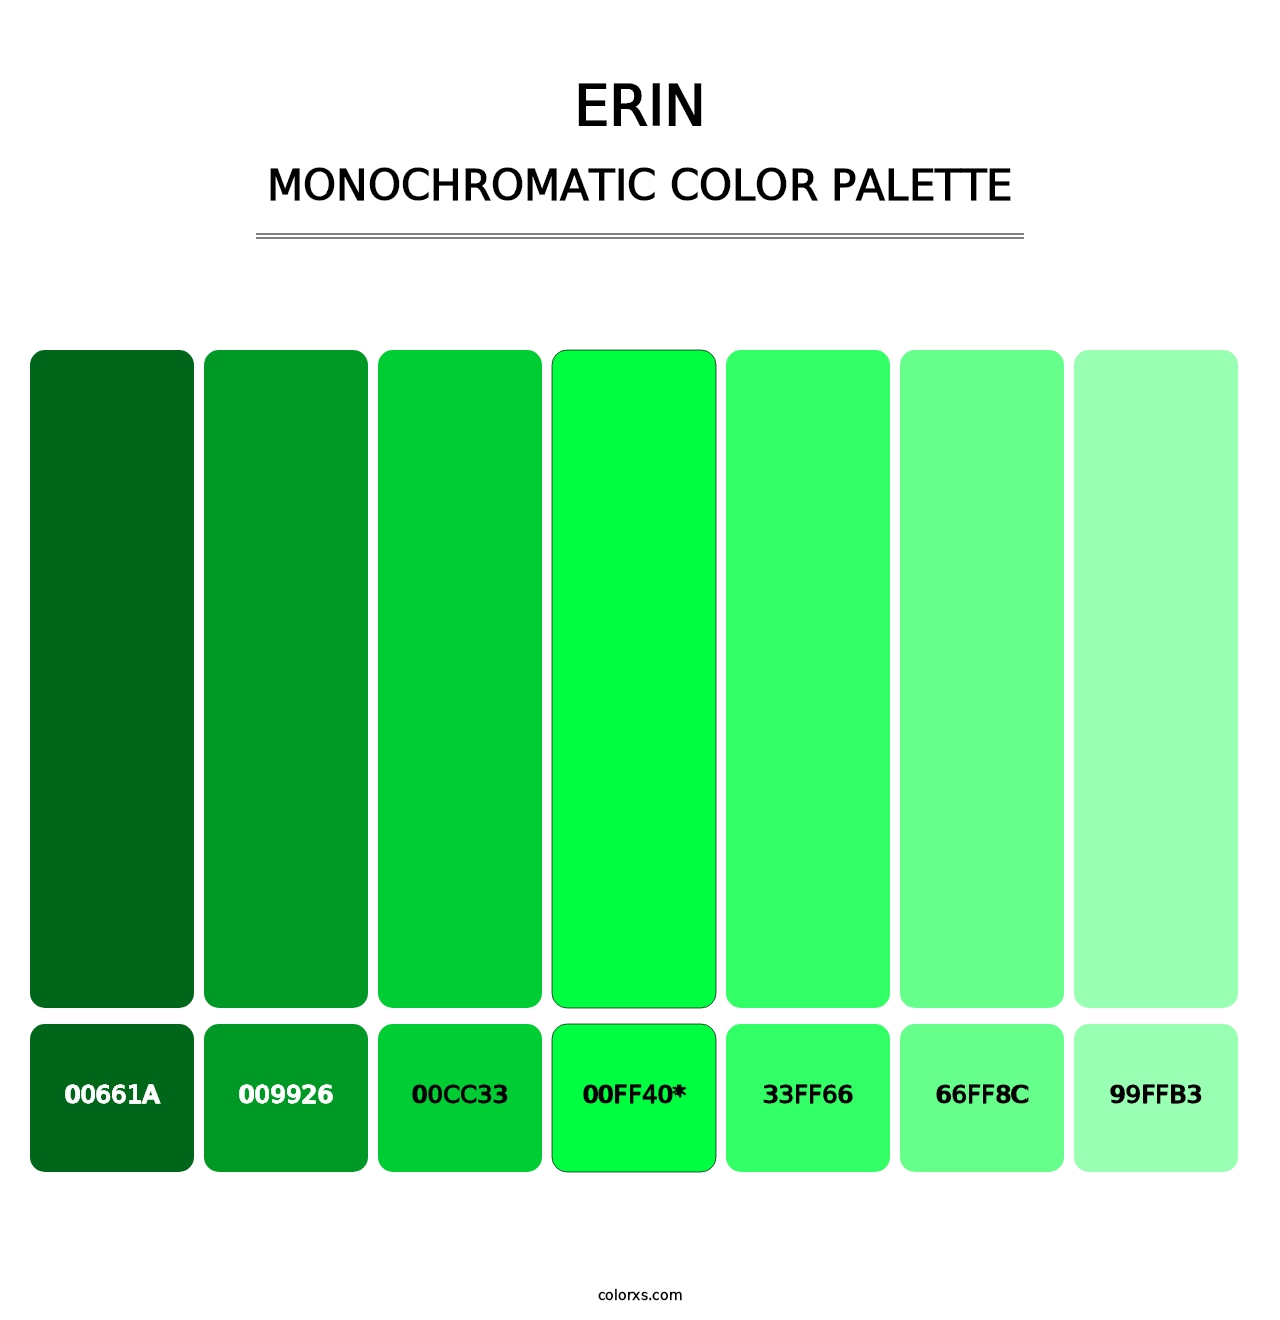 Erin - Monochromatic Color Palette